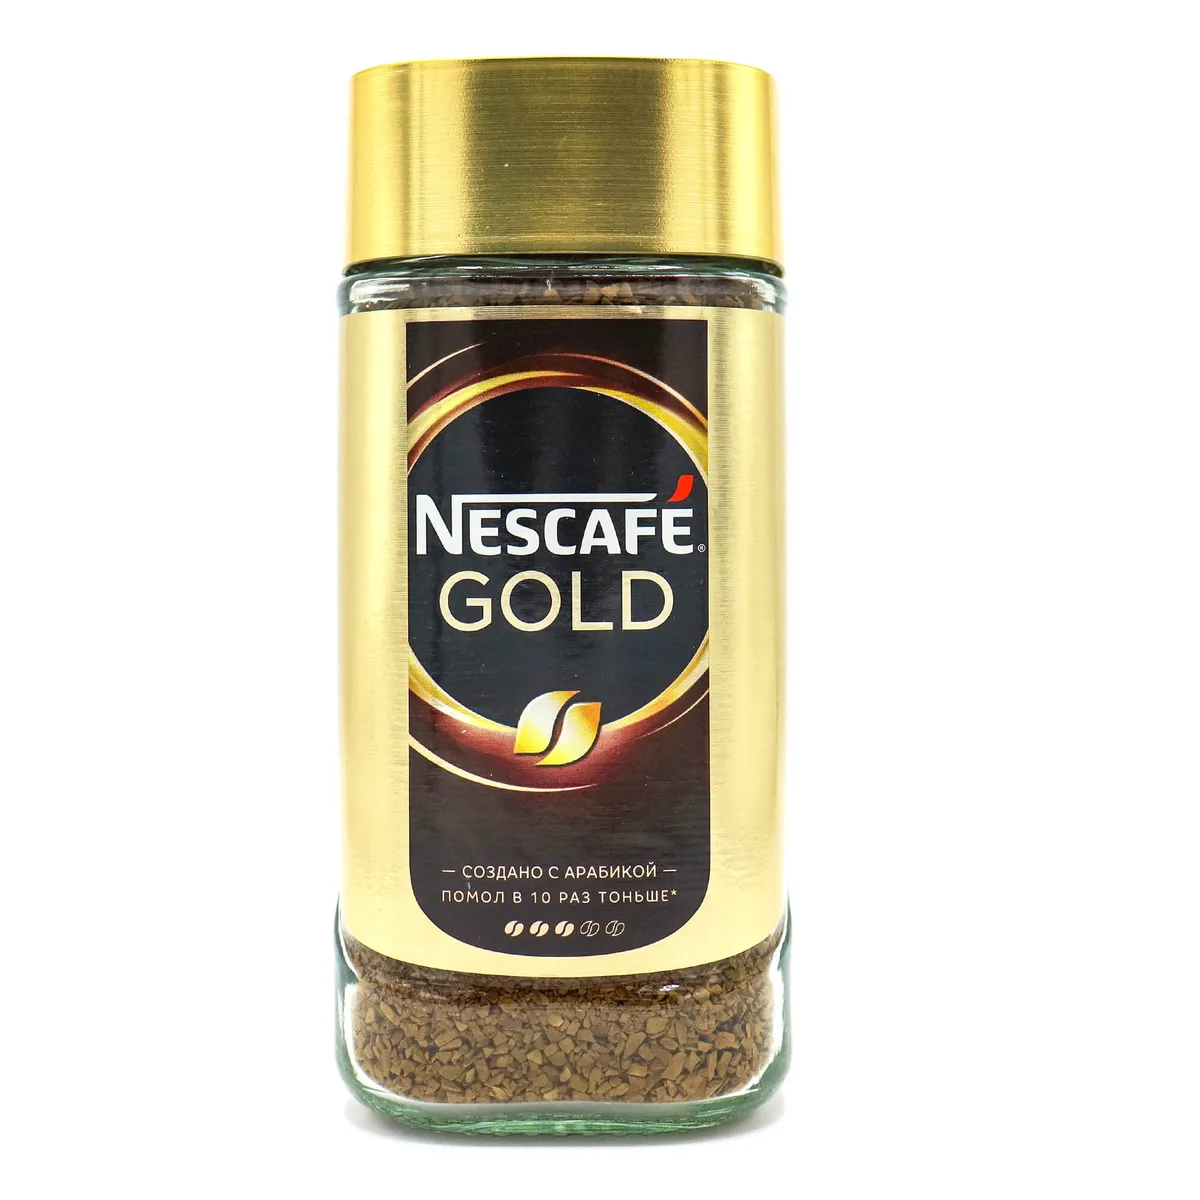 Nescafe gold 190г. Кофе Нескафе Голд 190г. Кофе растворимый Nescafe Gold, 190г. Нескафе Голд 190 стекло.